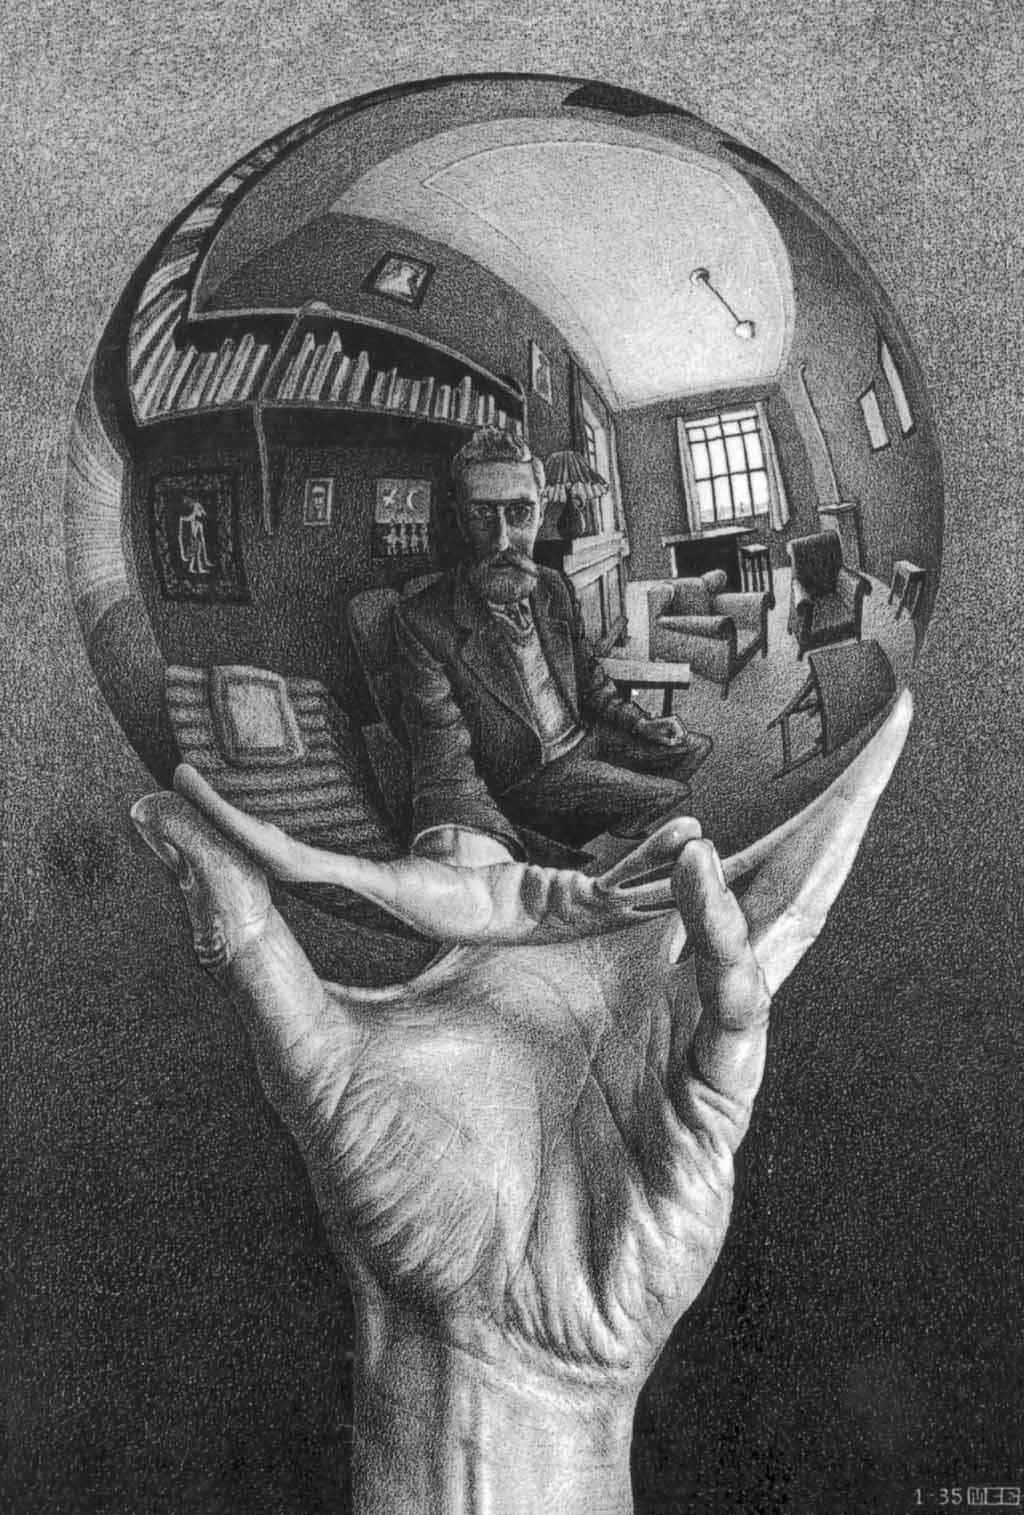 M. C. Escher Symmetry